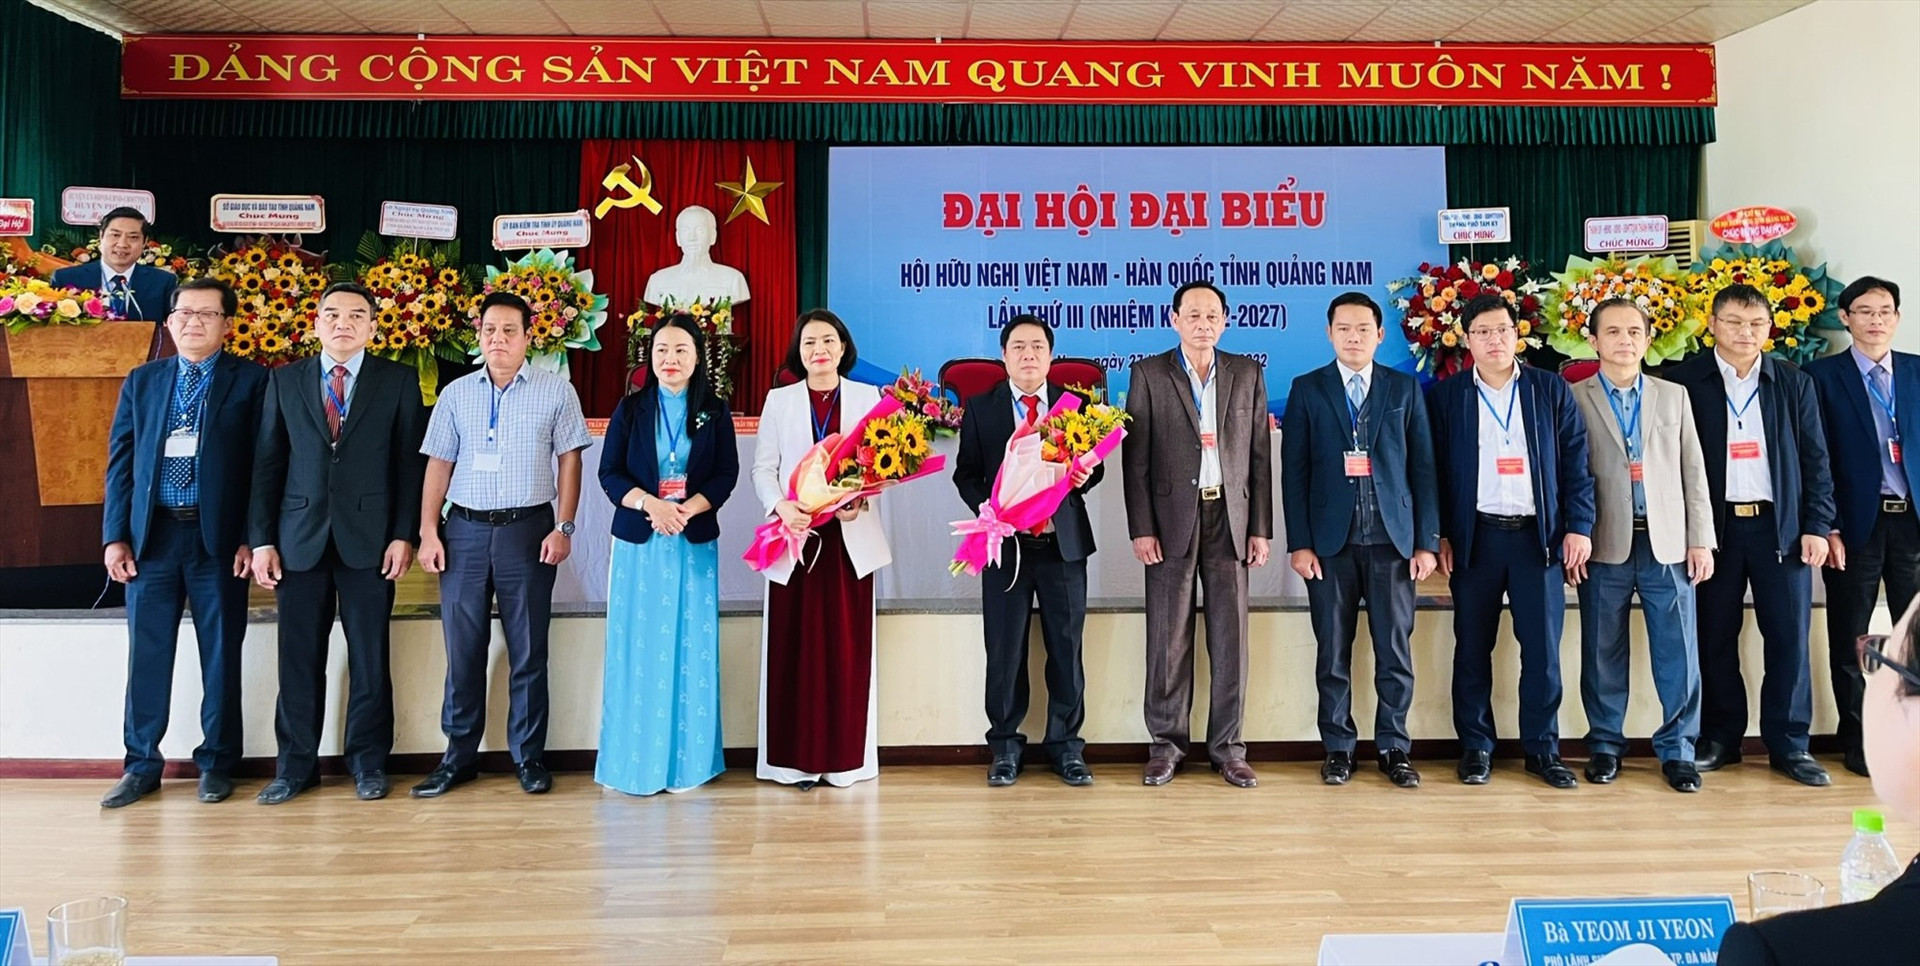 Đại hội bầu ra 18 đại biểu thuộc Ban Chấp hành Hội Hữu nghị Việt Nam - Hàn Quốc tỉnh Quảng Nam nhiện kỳ 2022 - 2027. Ảnh: X.H